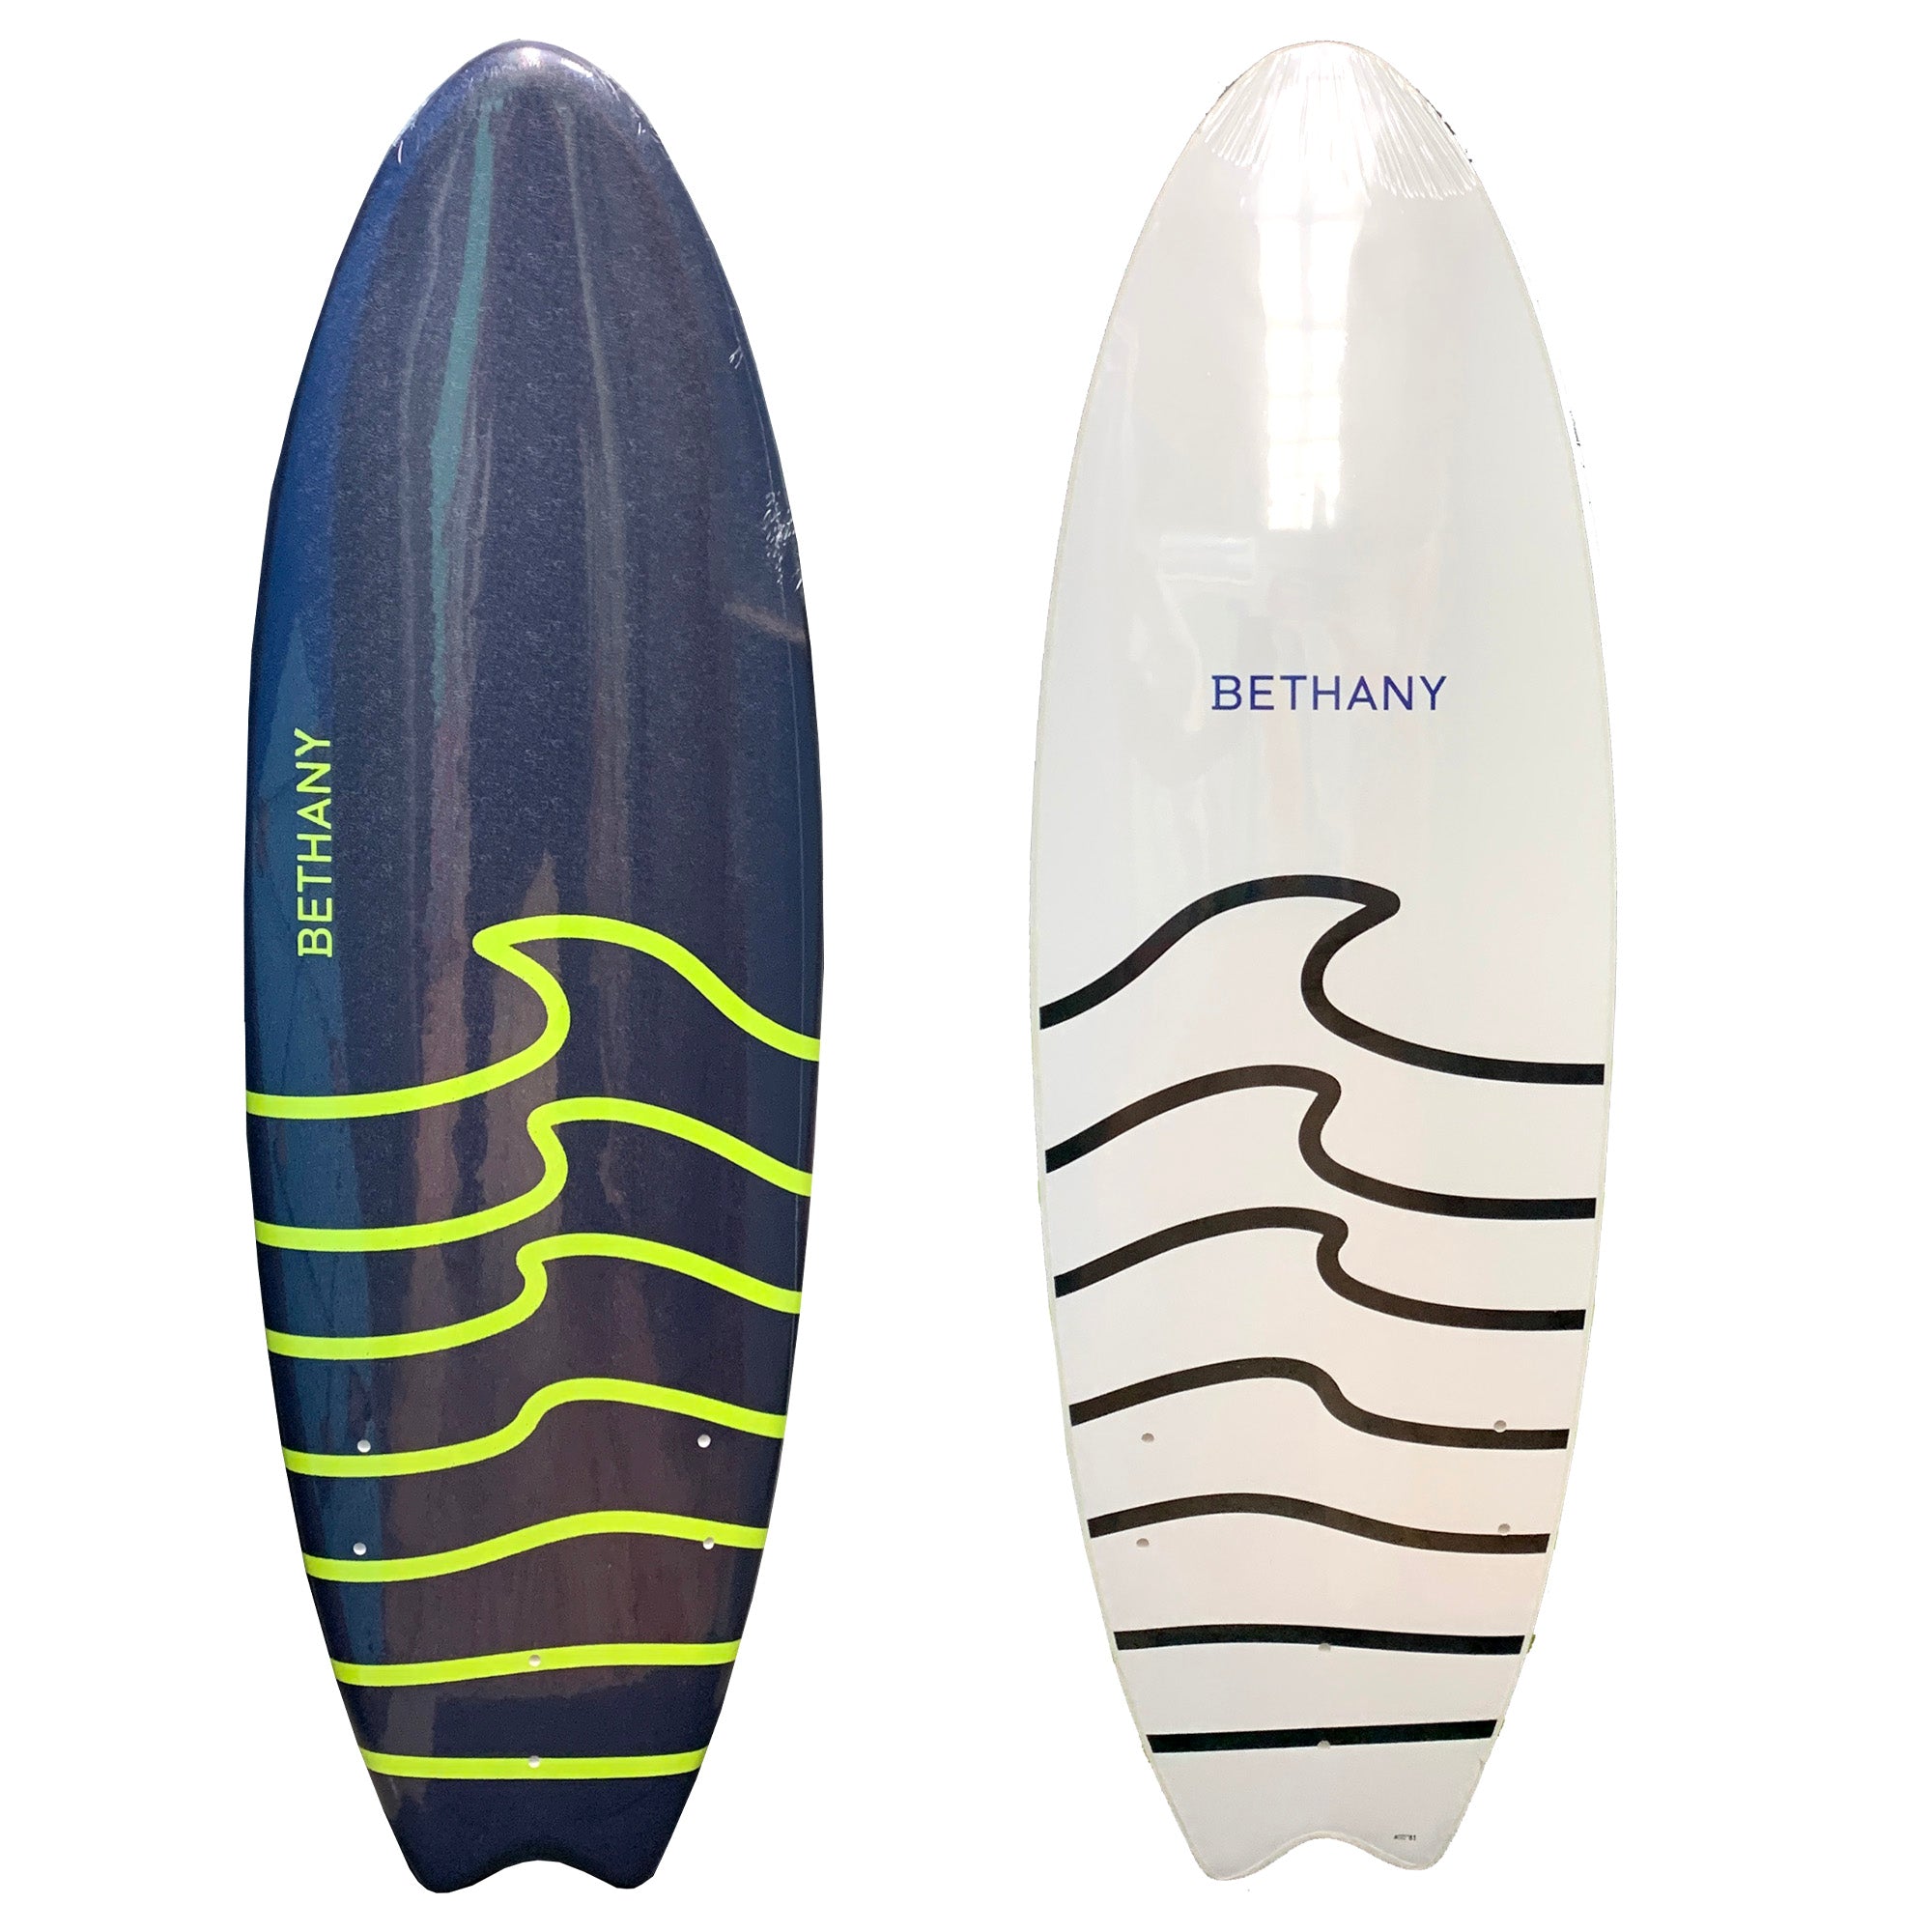 Bethany Hamilton 5'6 Soft Surfboard